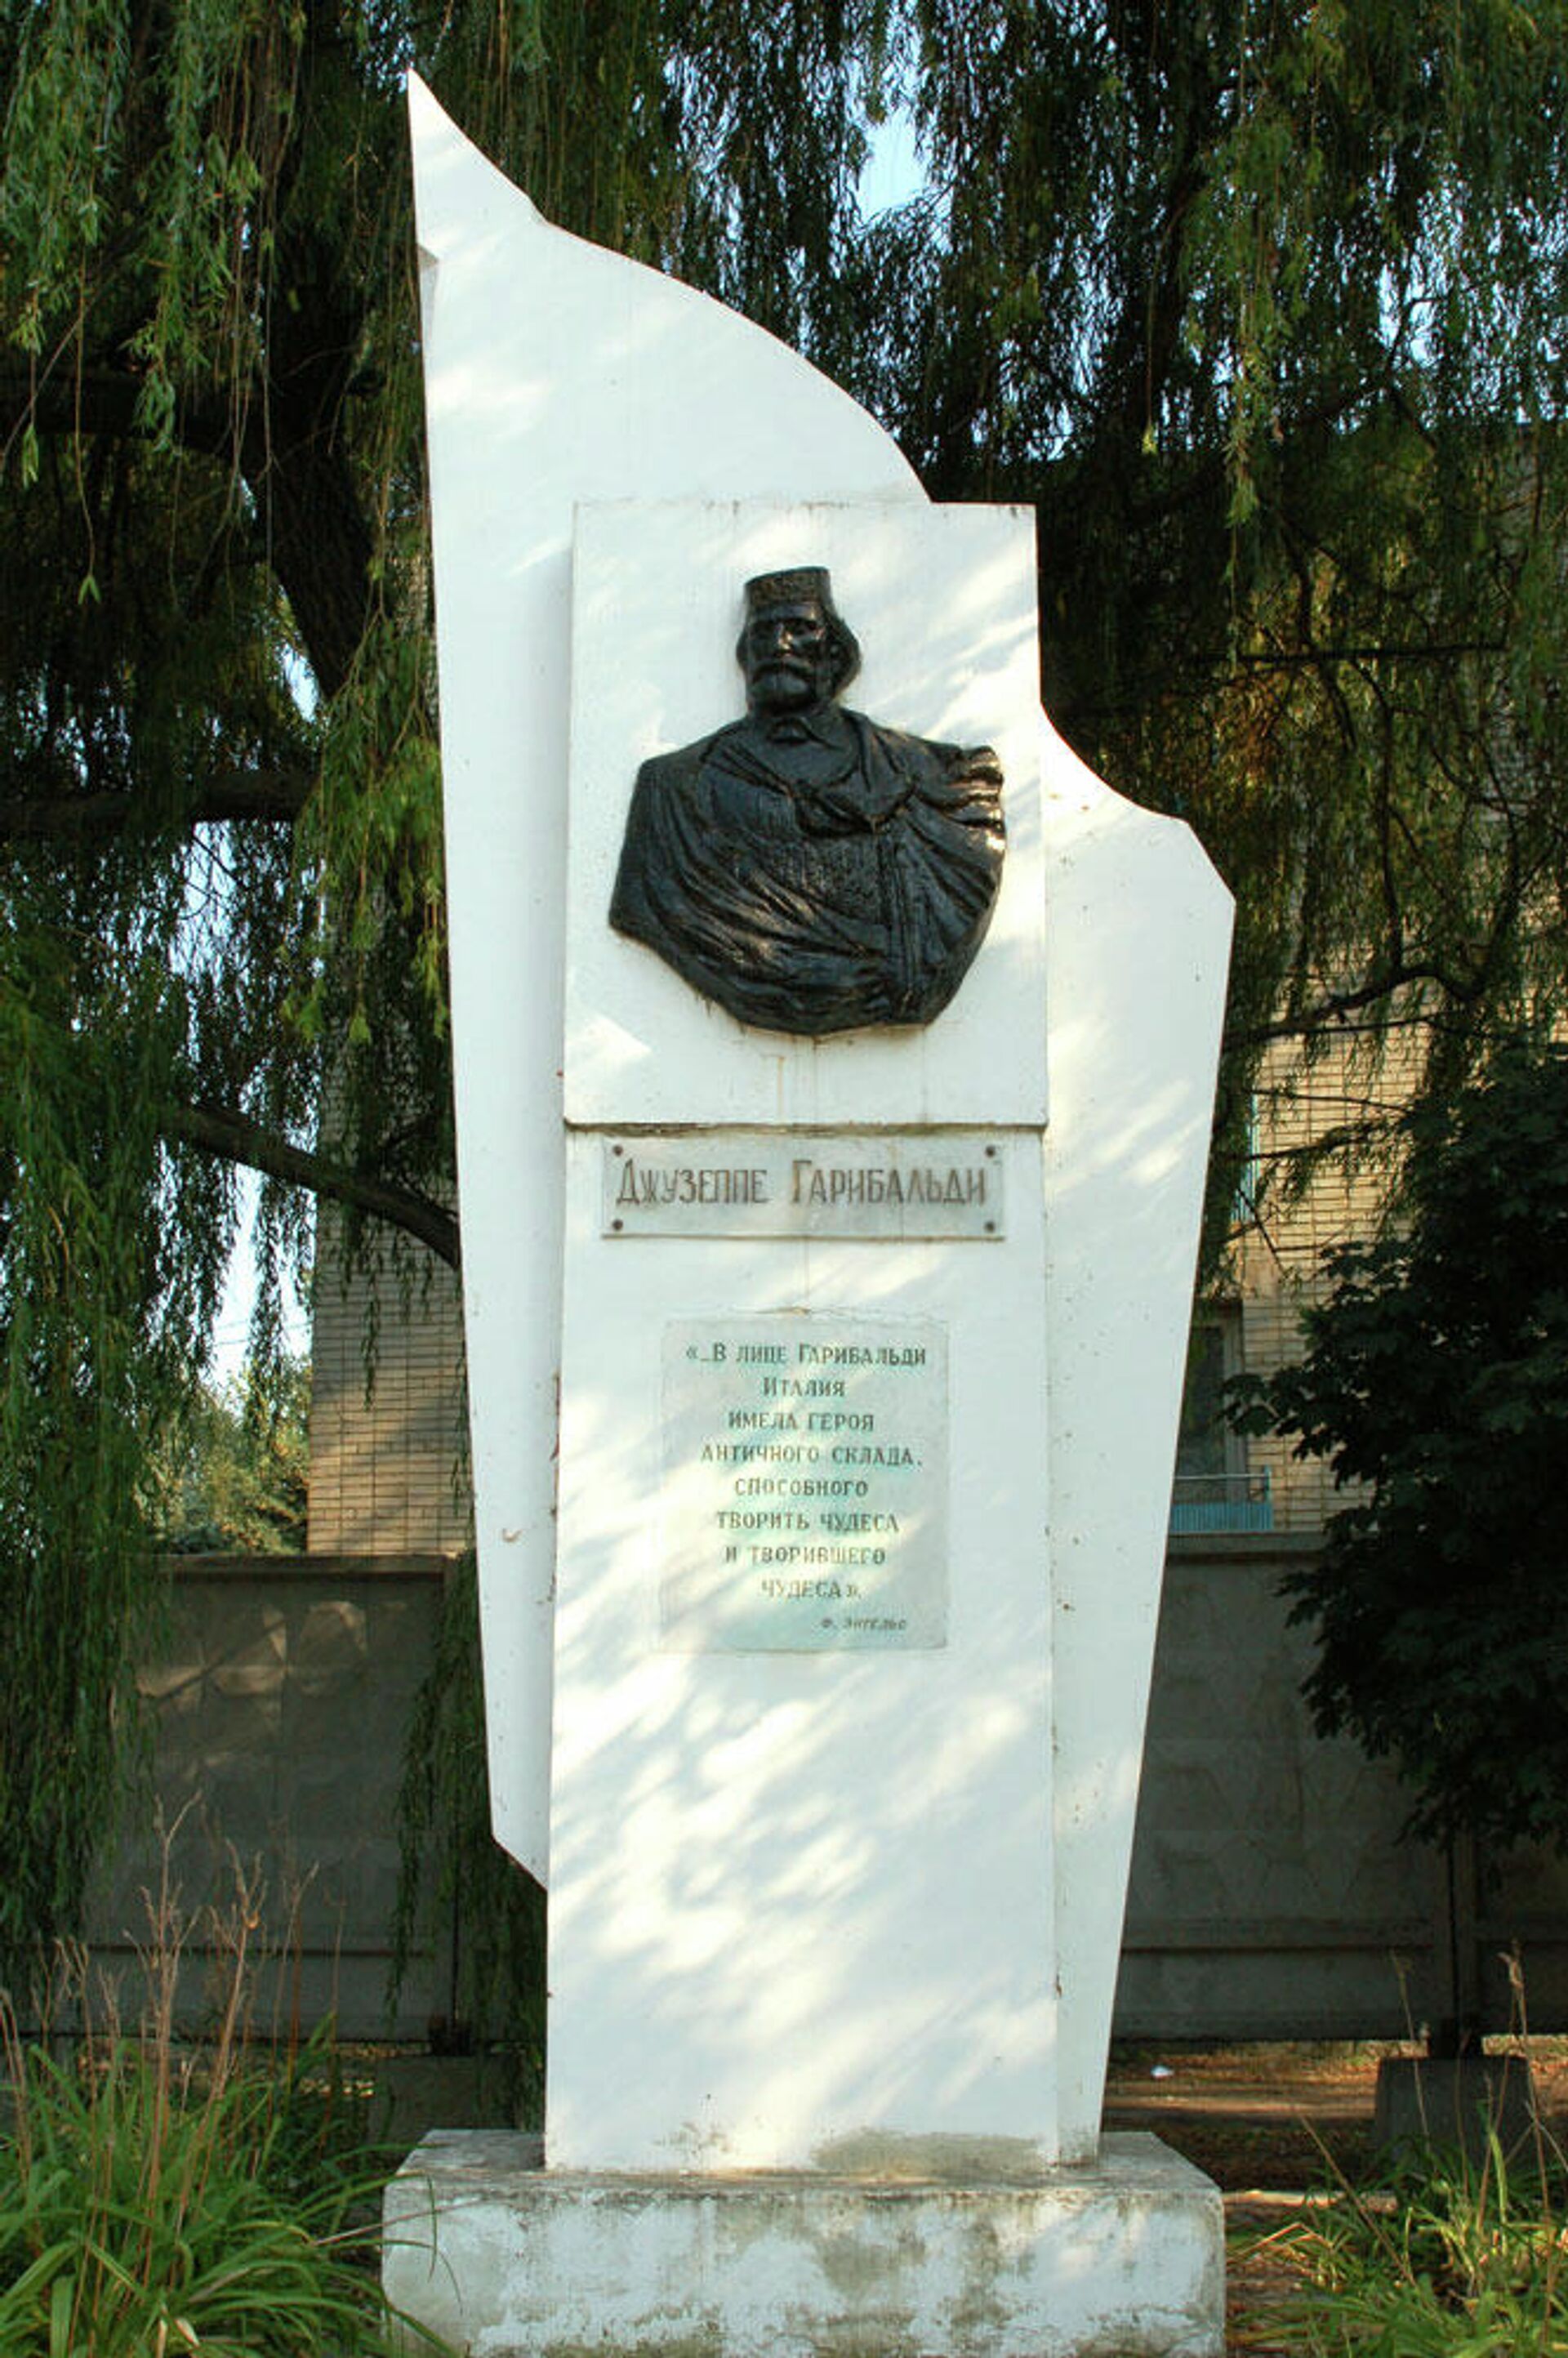  Памятник Гарибальди в Таганроге - РИА Новости, 1920, 08.09.2021